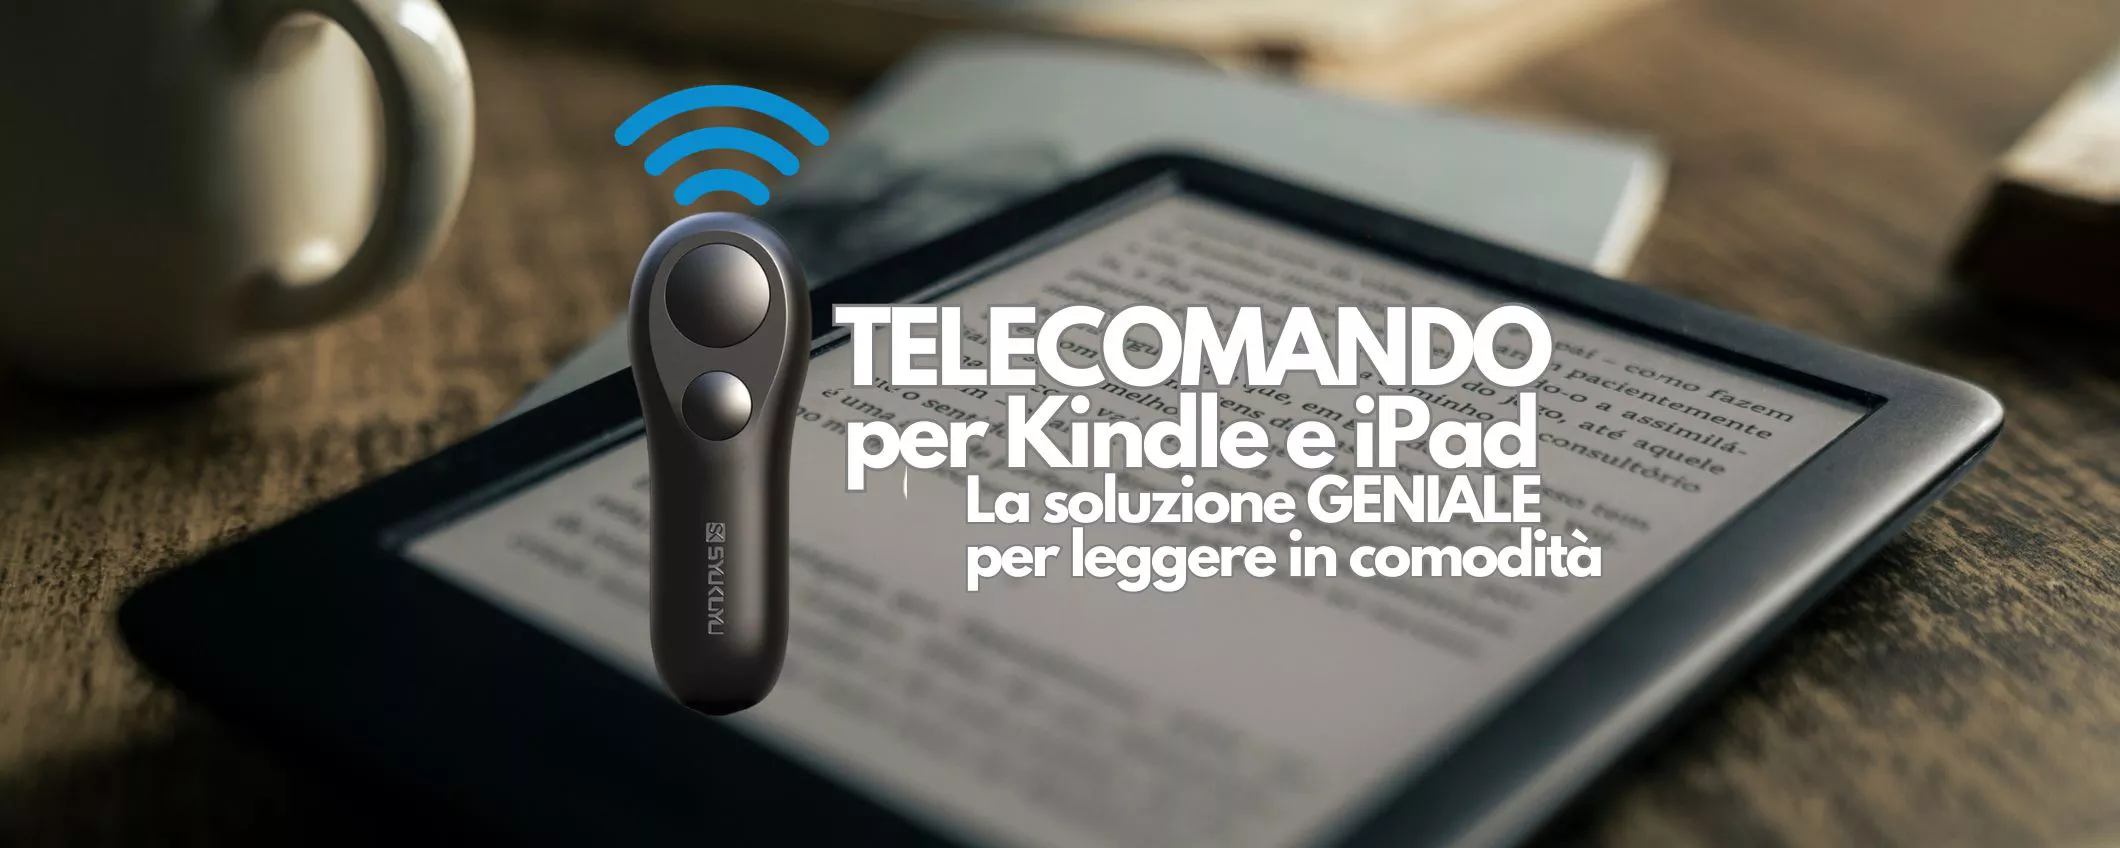 Telecomando per Kindle e iPad: con questa FURBATA ti godi i tuoi eBook con un click